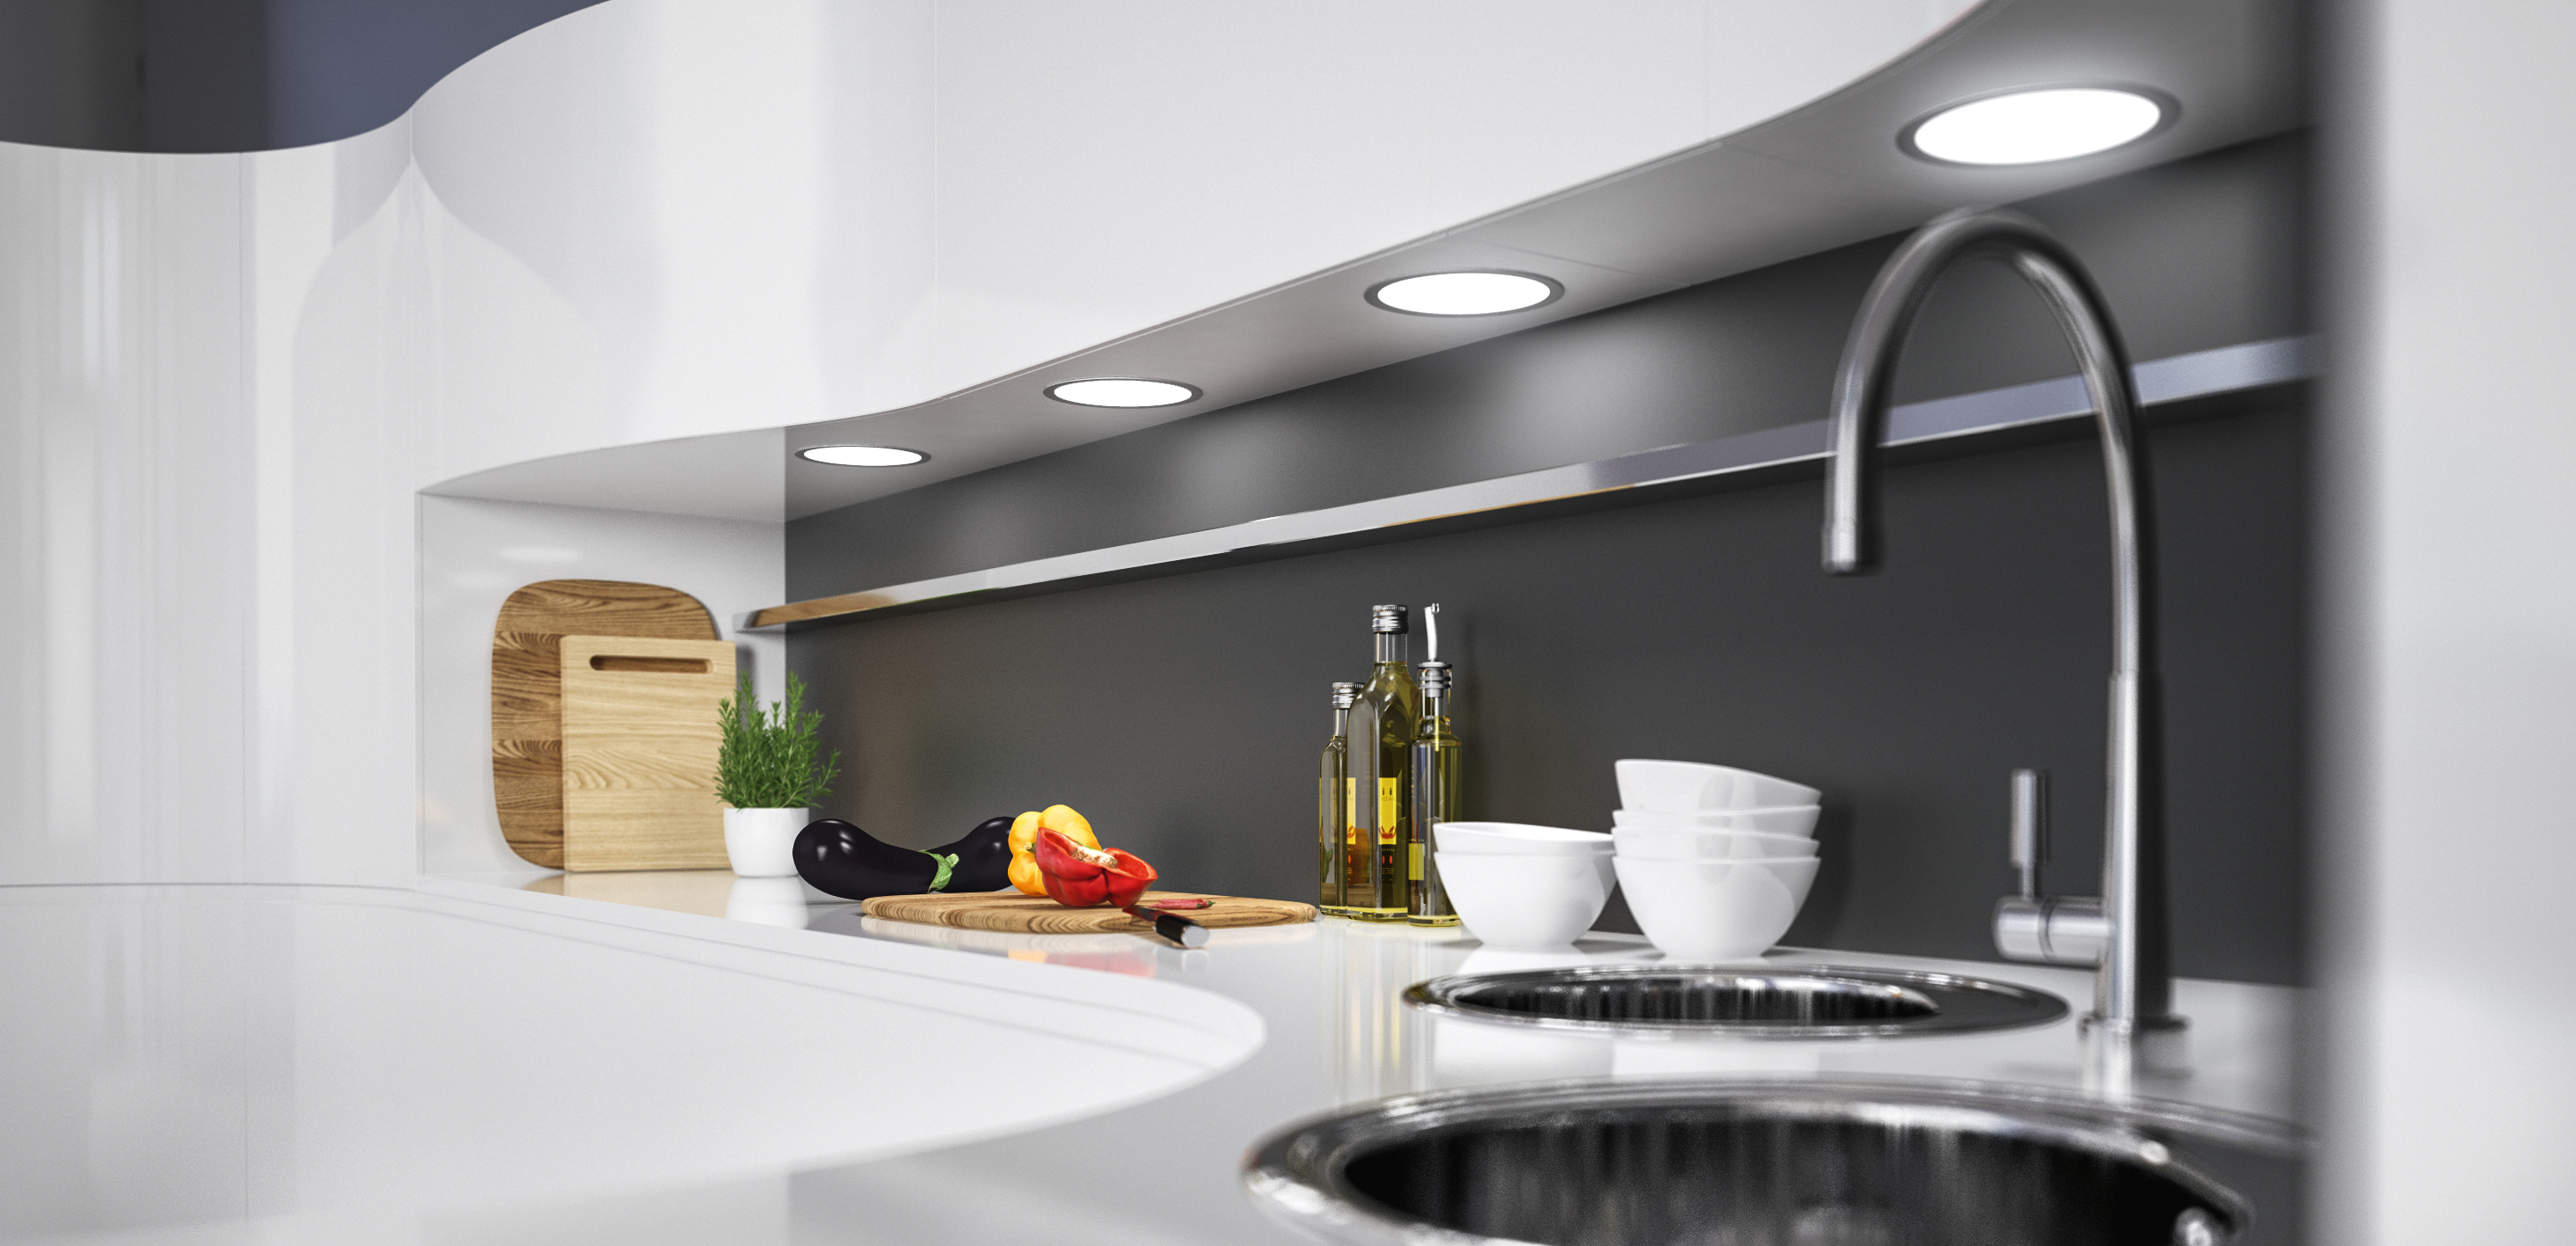 Schlichte Eleganz und homogene Lichtleistung sind die wichtigsten Merkmale der Einbau- und Unterbauleuchten Loox LED 3022. Ihre flache Bauform ermöglicht kreative Anwendungen.